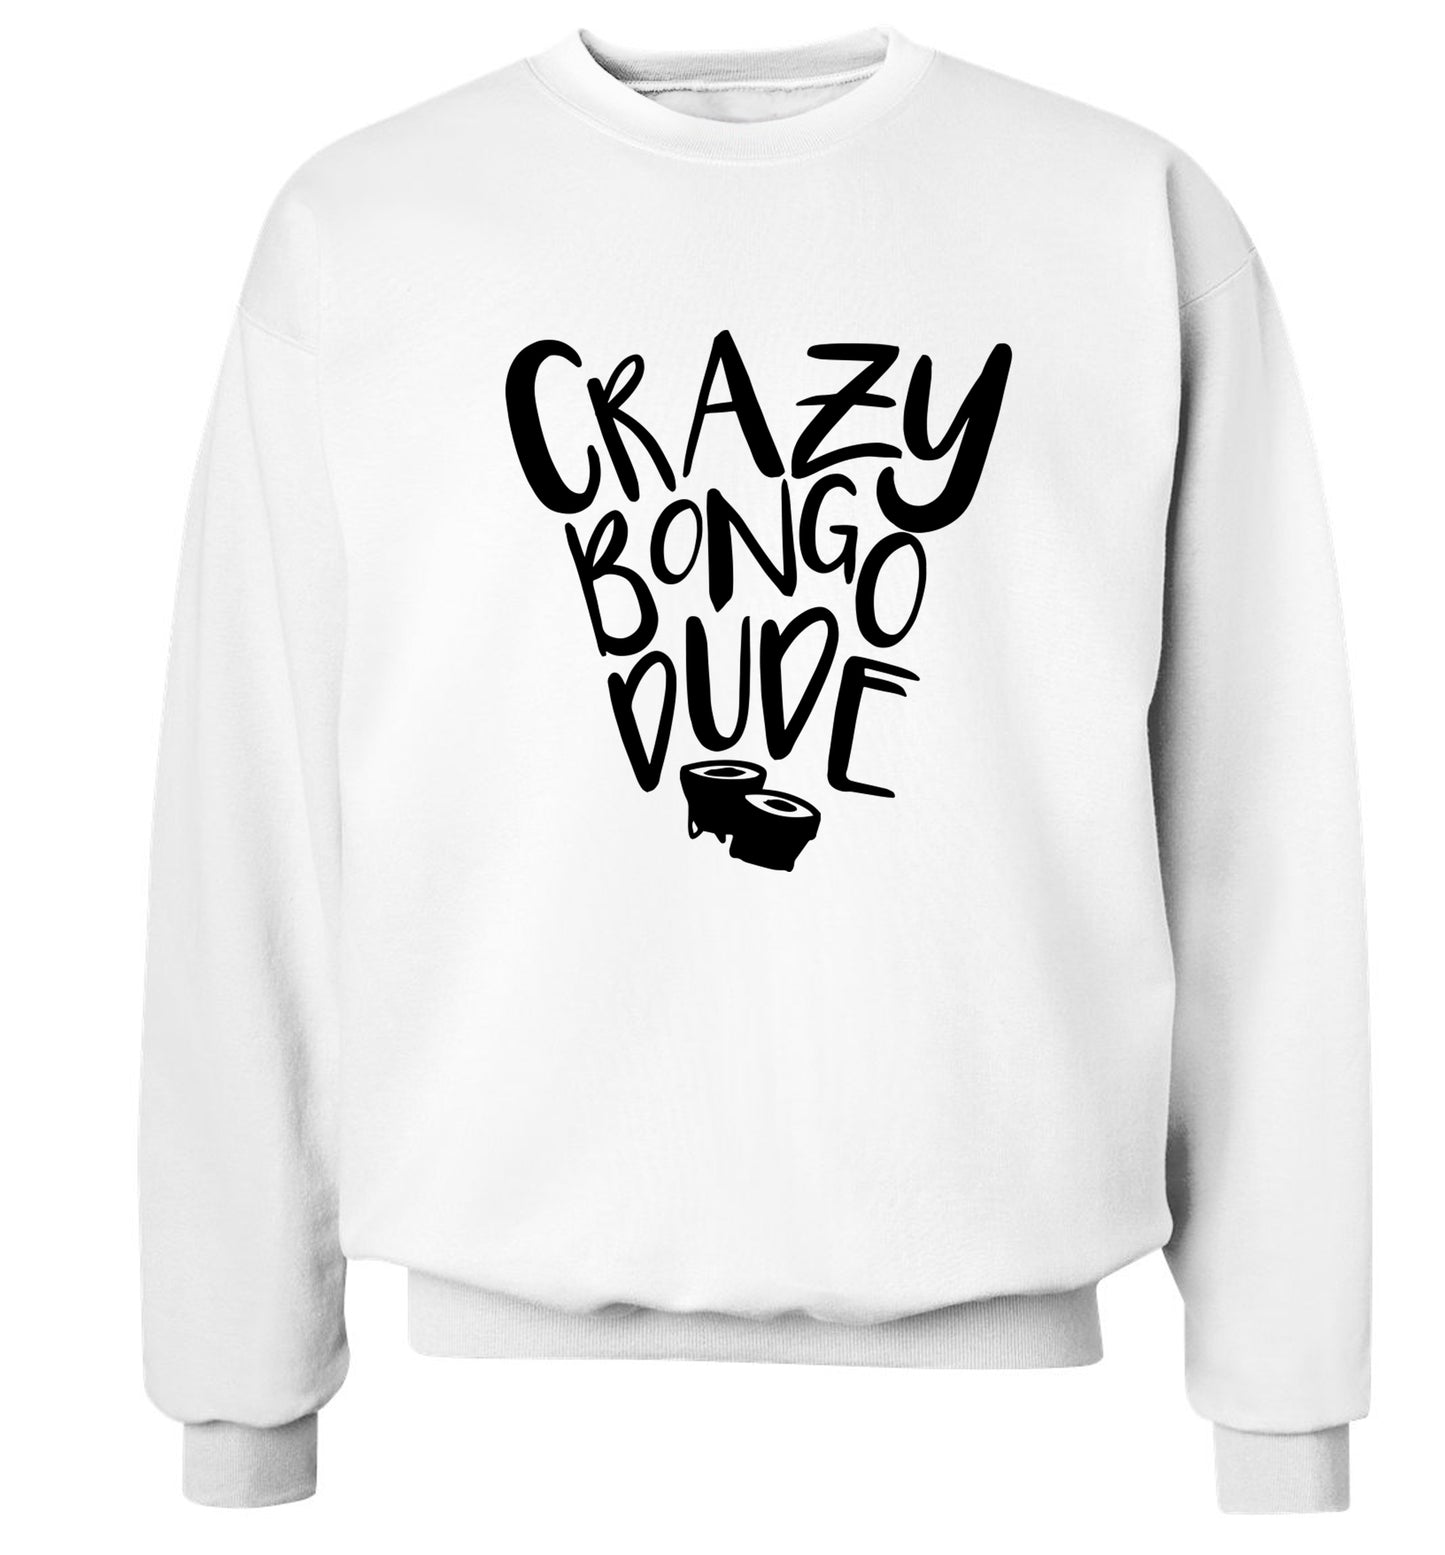 Crazy bongo dude Adult's unisex white Sweater 2XL